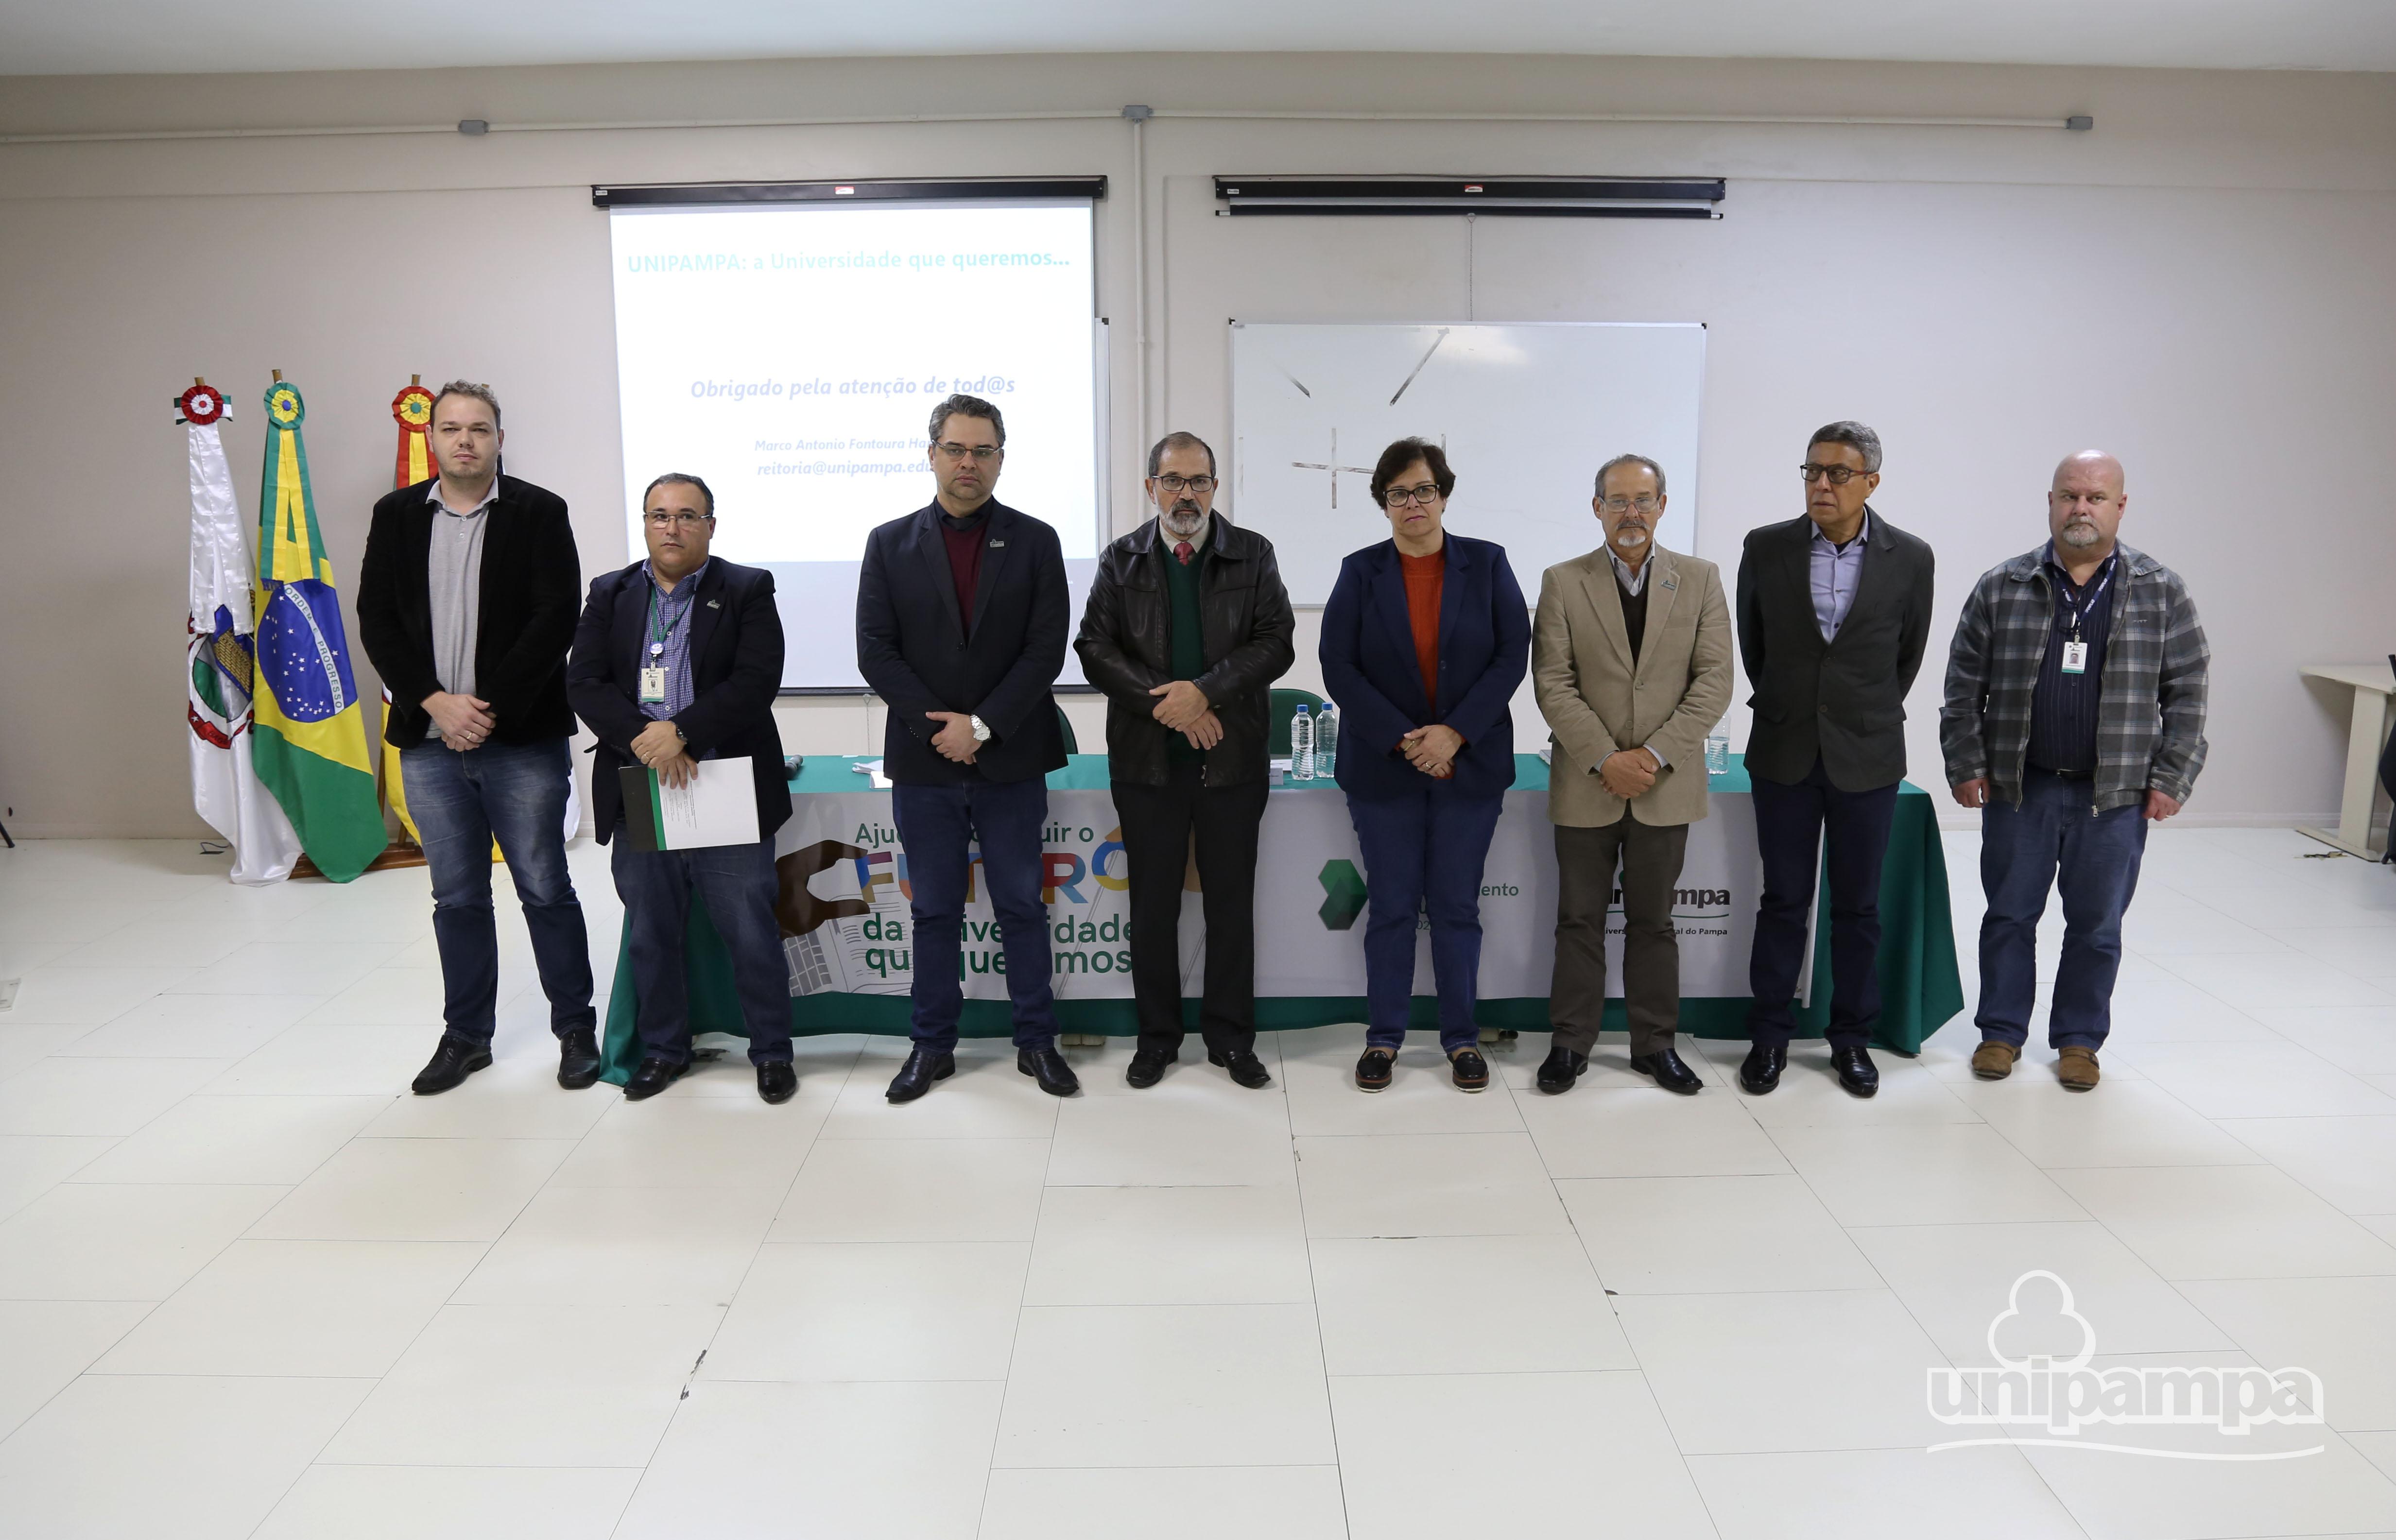 Comissão Central de Elaboração do PDI foi apresentada a comunidade universitário. Foto: Ronaldo Estevam